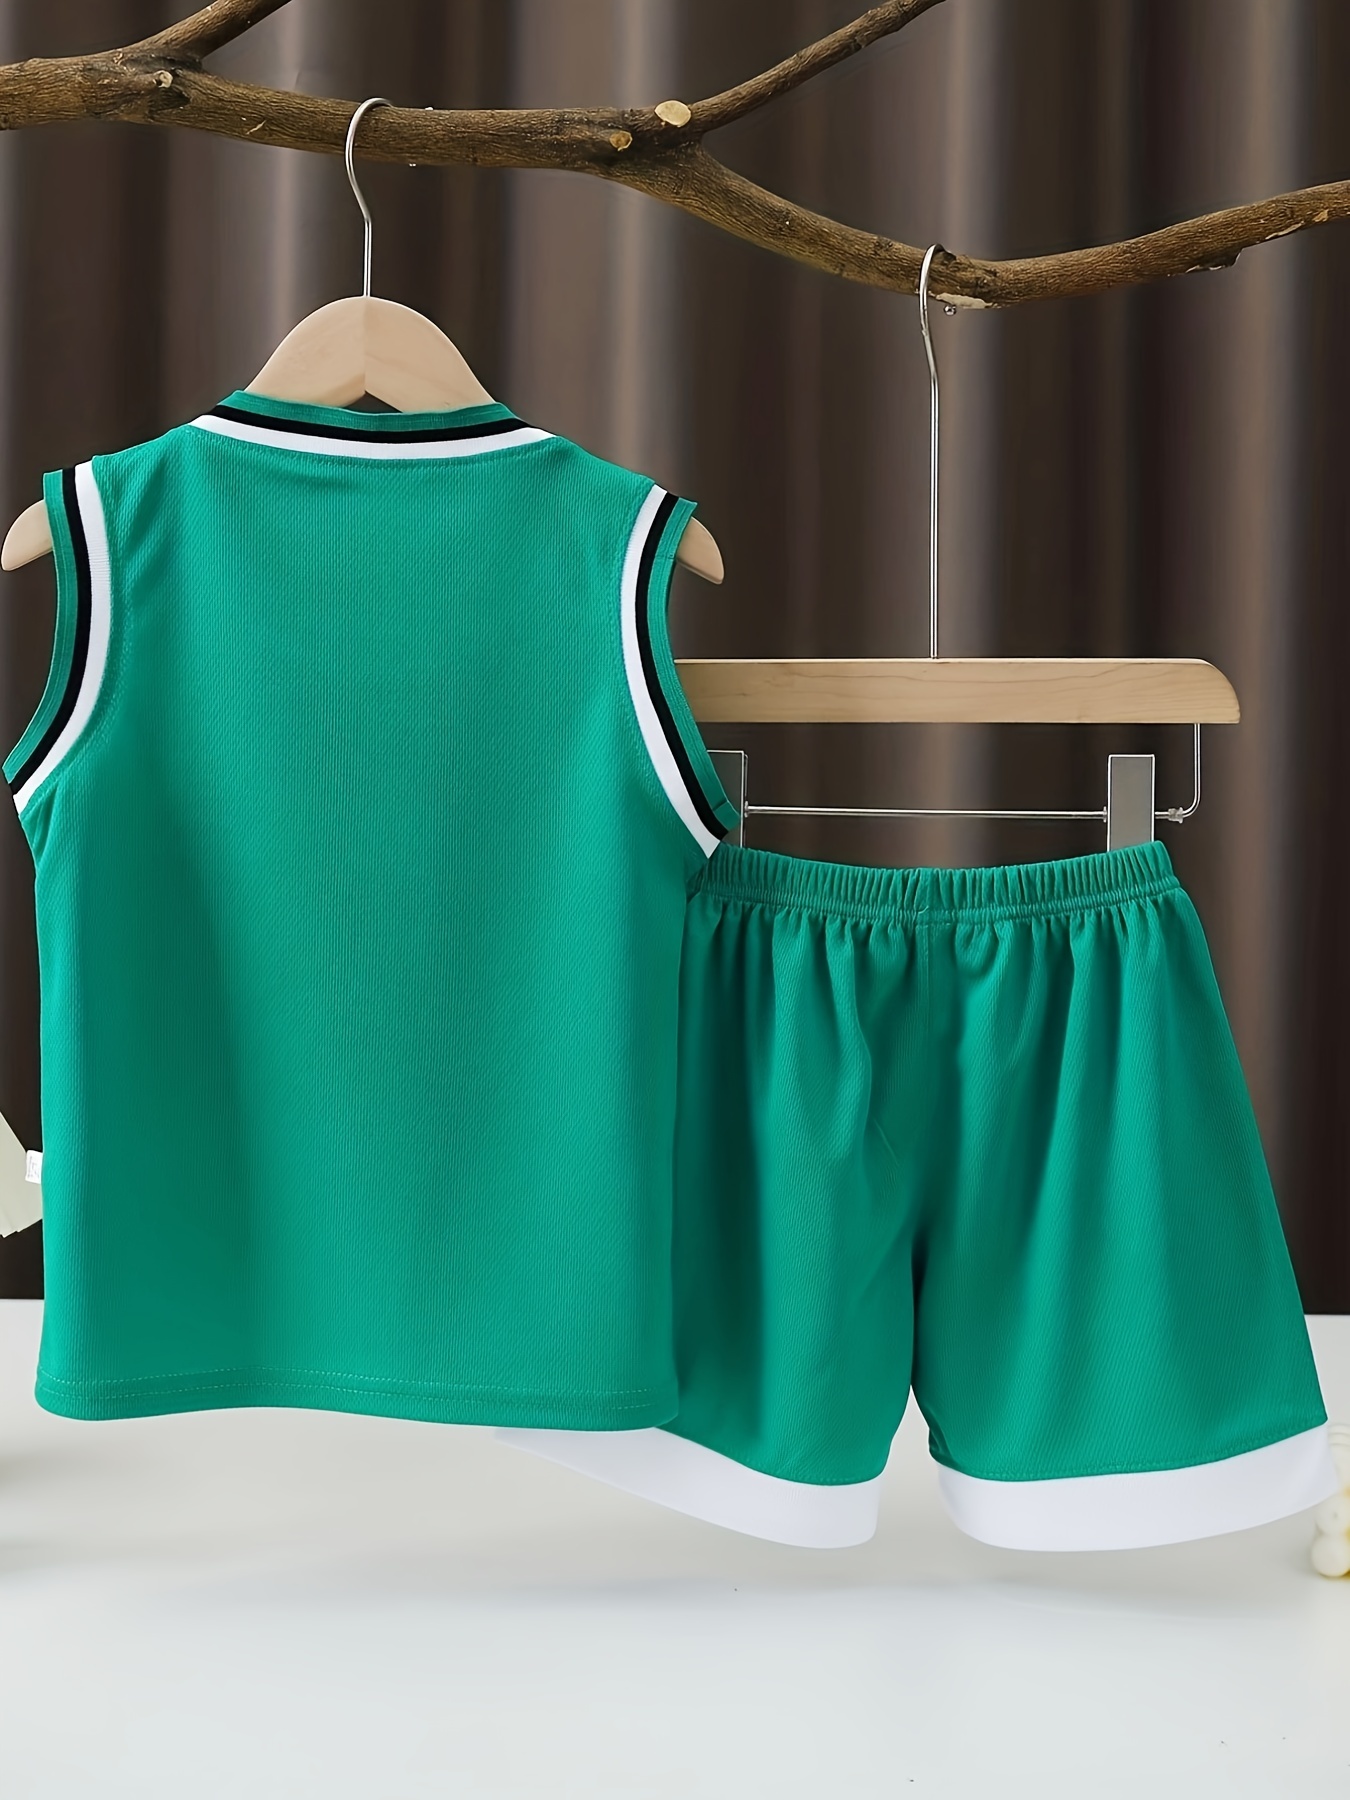 WTBFBY Boys & Girls Basketball Fans T Shirt Outfit Running Jersey Workout Tank Top Sleeveless T-Shirt Shorts Set